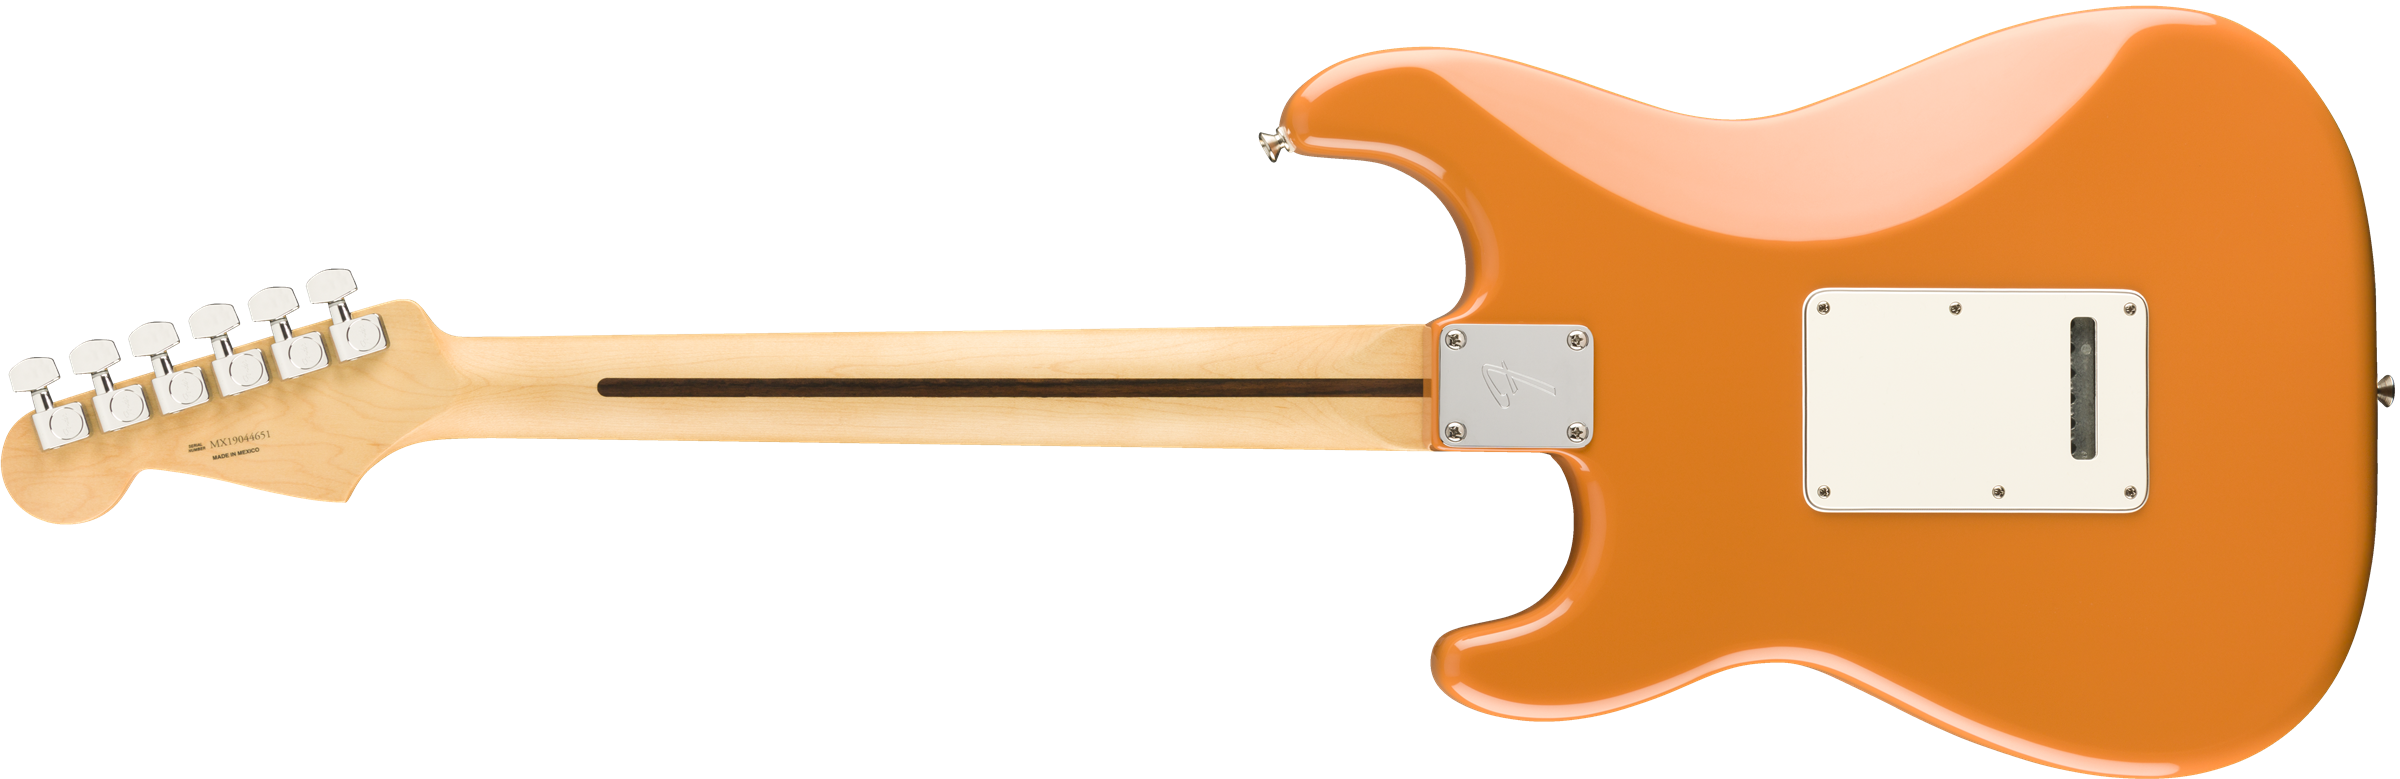 Fender Strat Player Mex Hss Pf - Capri Orange - Elektrische gitaar in Str-vorm - Variation 1